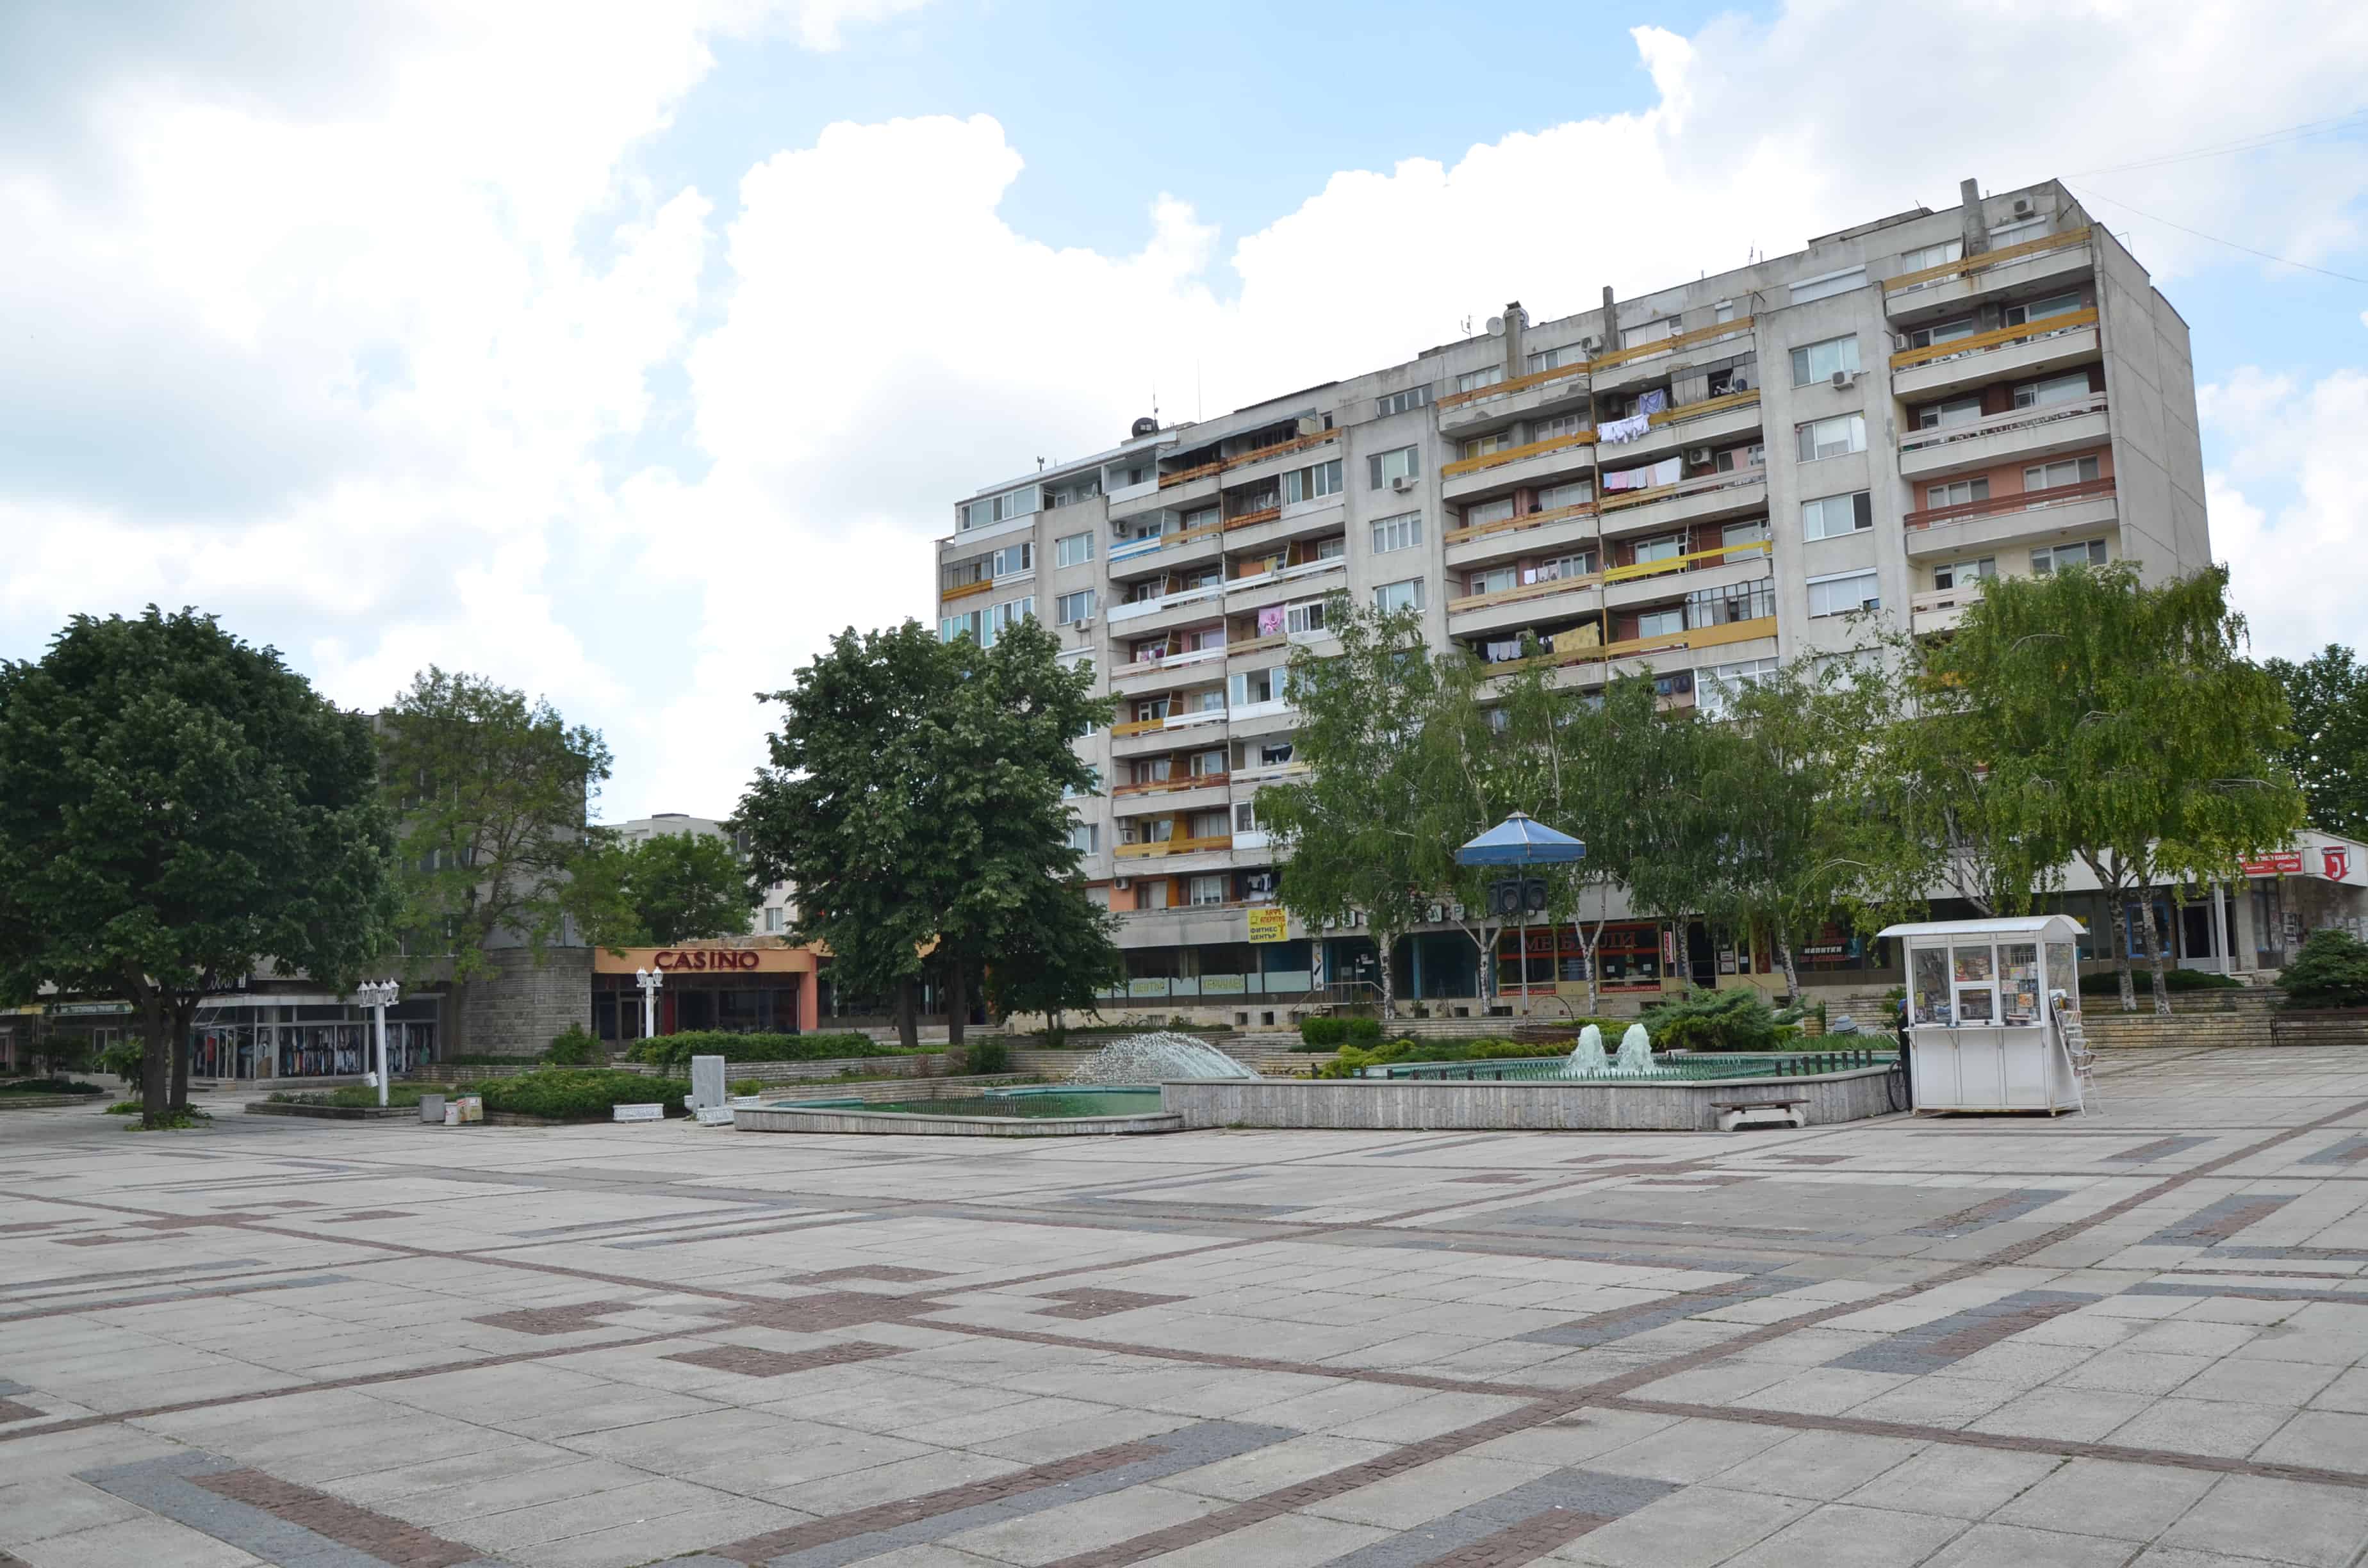 Main square in Kavarna, Bulgaria